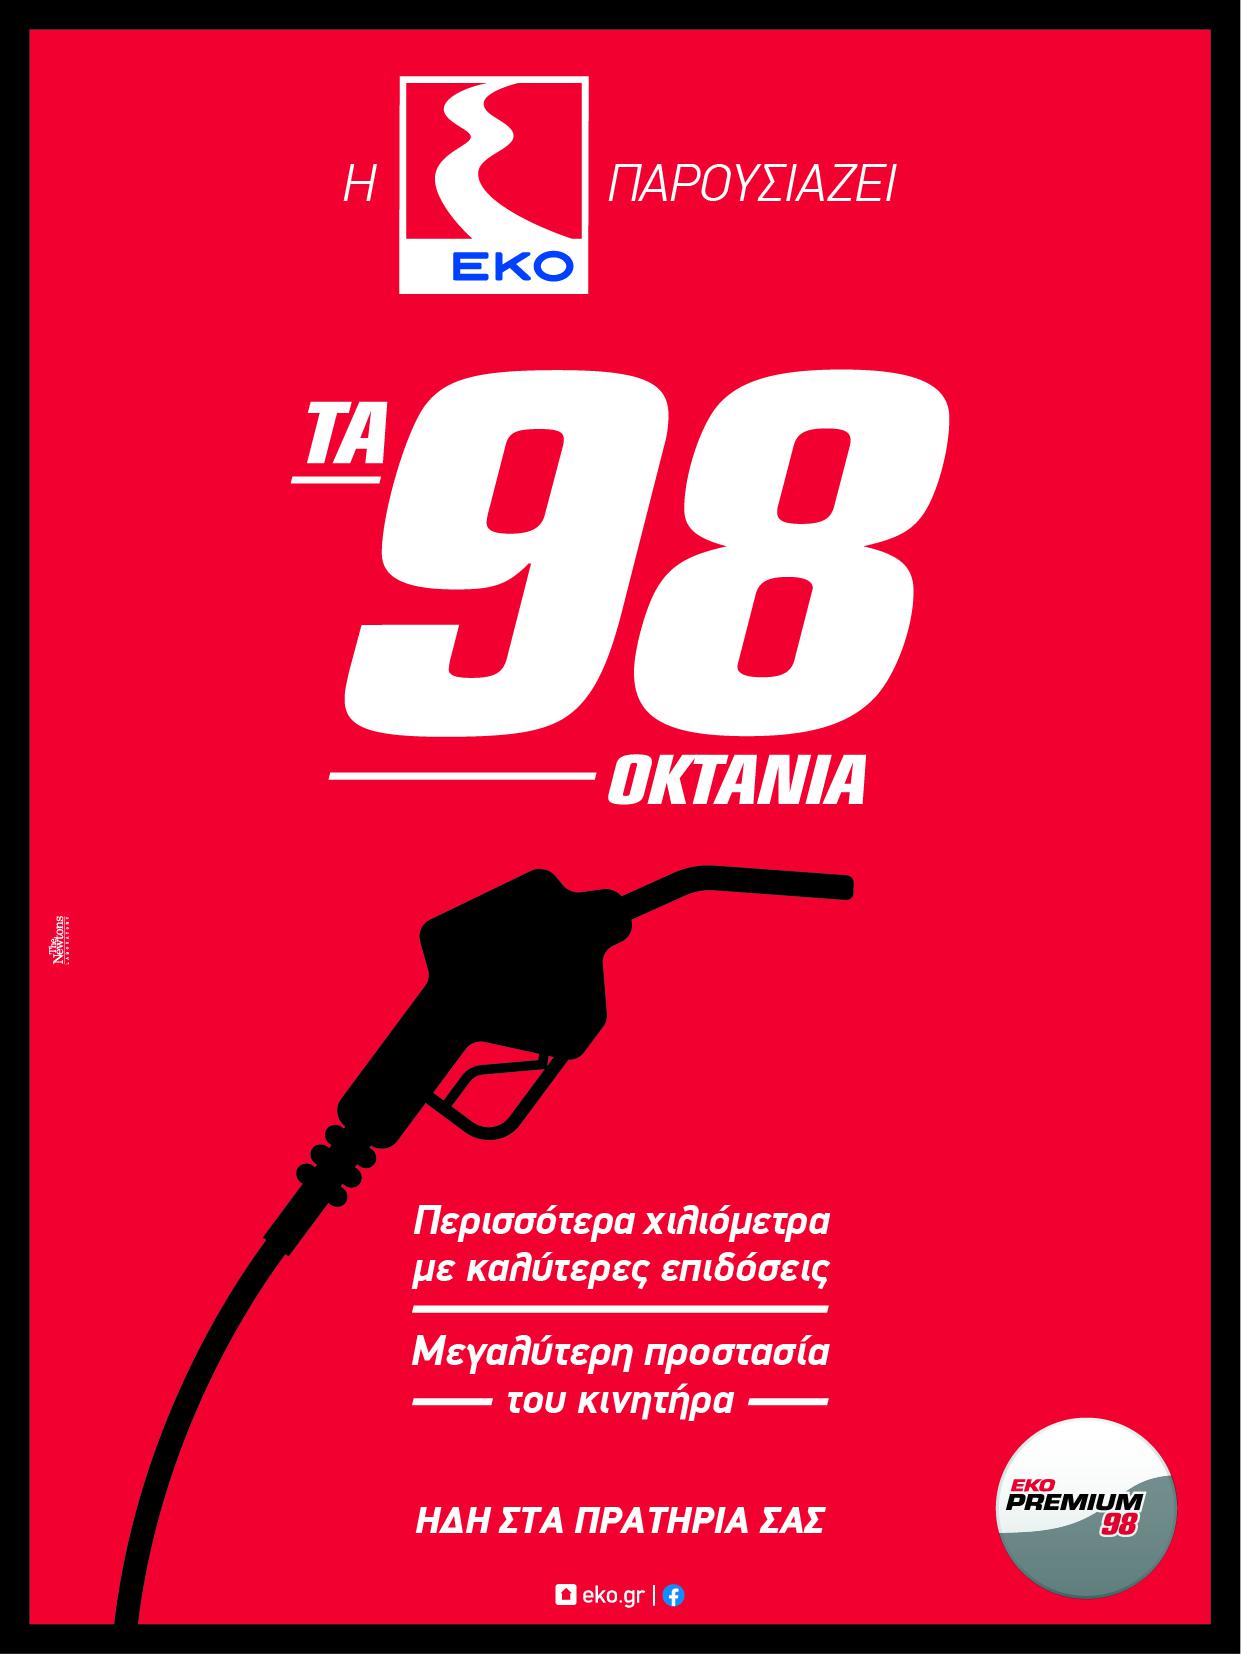 Νέα βενζίνη ΕΚΟ Premium 98:  Μεγαλύτερη προστασία του κινητήρα, ακόμα καλύτερες επιδόσεις